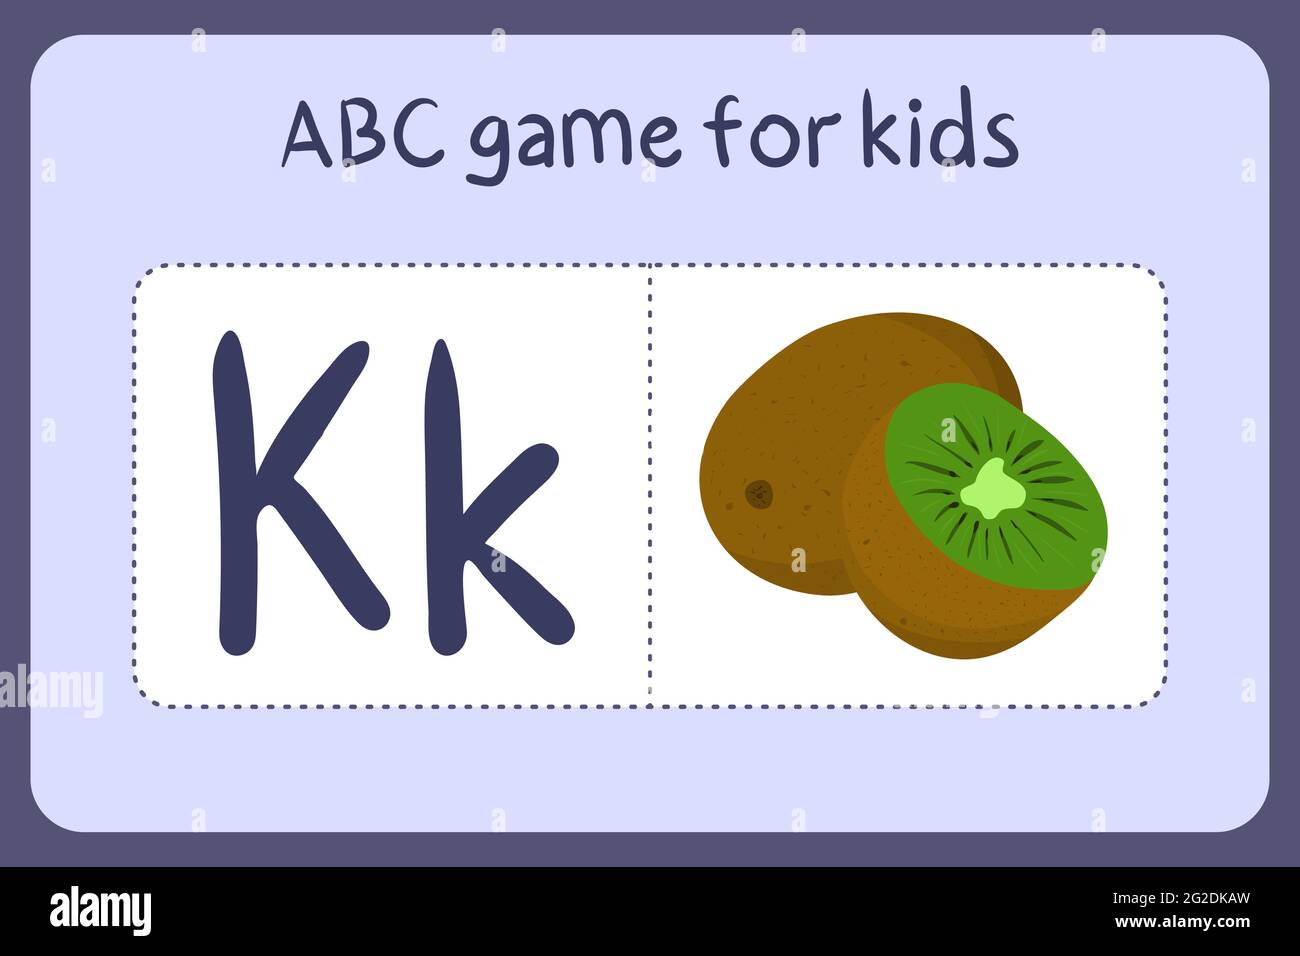 Mini-jeux d'alphabet pour enfants de style dessin animé avec la lettre K - kiwi. Illustration vectorielle pour la conception de jeux - couper et jouer. Apprenez l'abc avec des cartes flash de fruits et légumes. Illustration de Vecteur